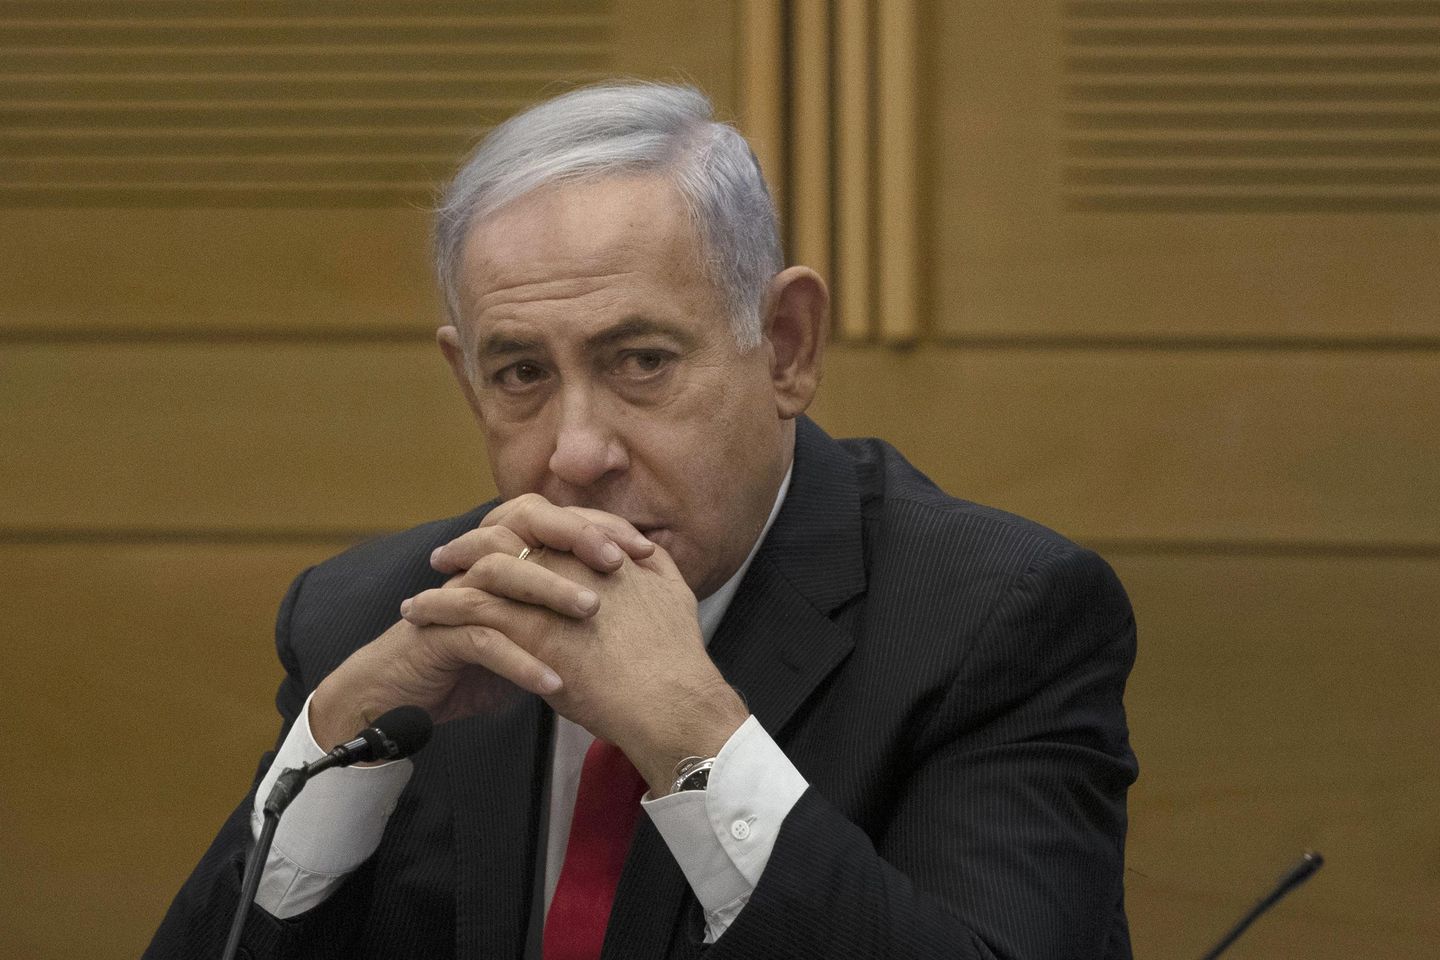 İsrail koalisyonunun çöküşü, önlenemez Benjamin Netanyahu için bir açılım sağlıyor